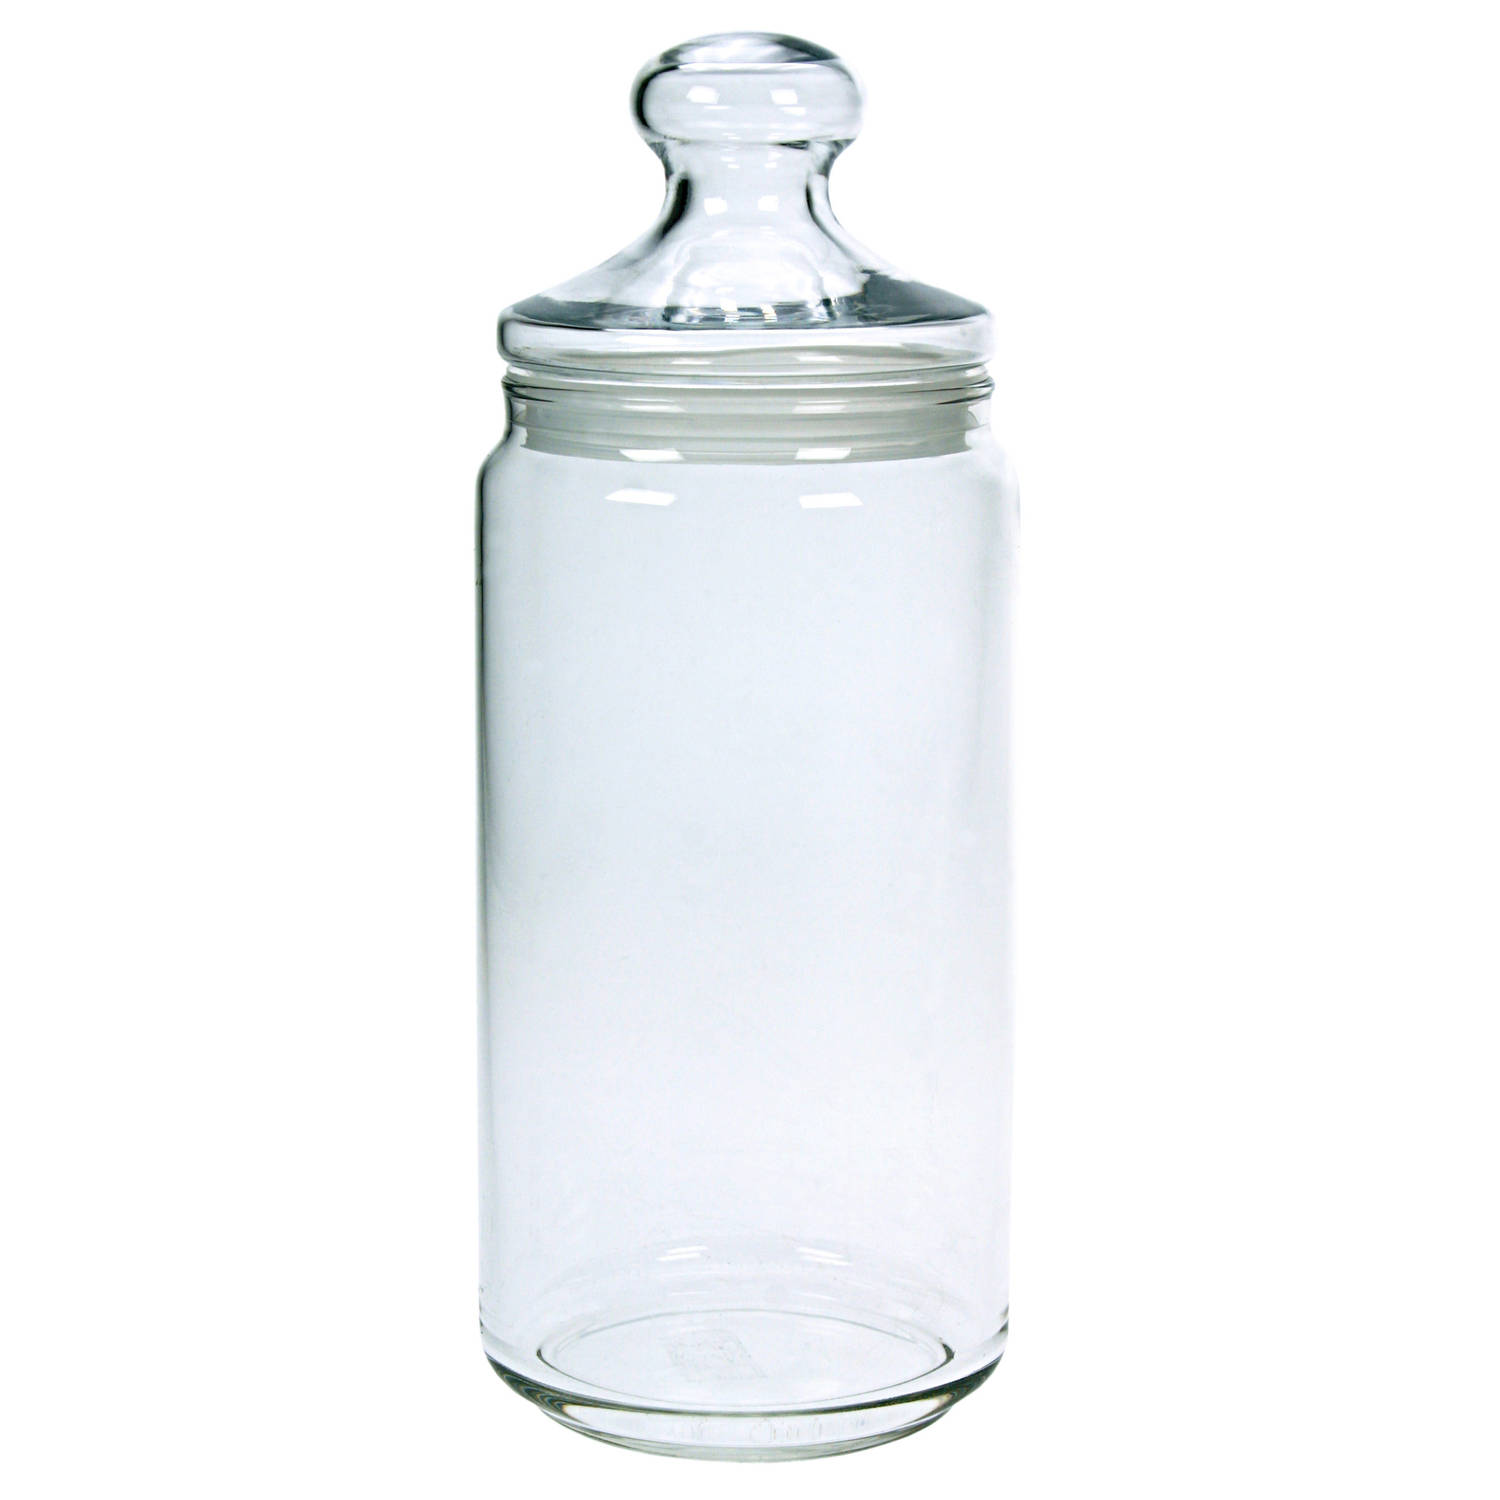 Voorraadpot/bewaarpot 1500 ml glas met glazen deksel - Voorraadpot